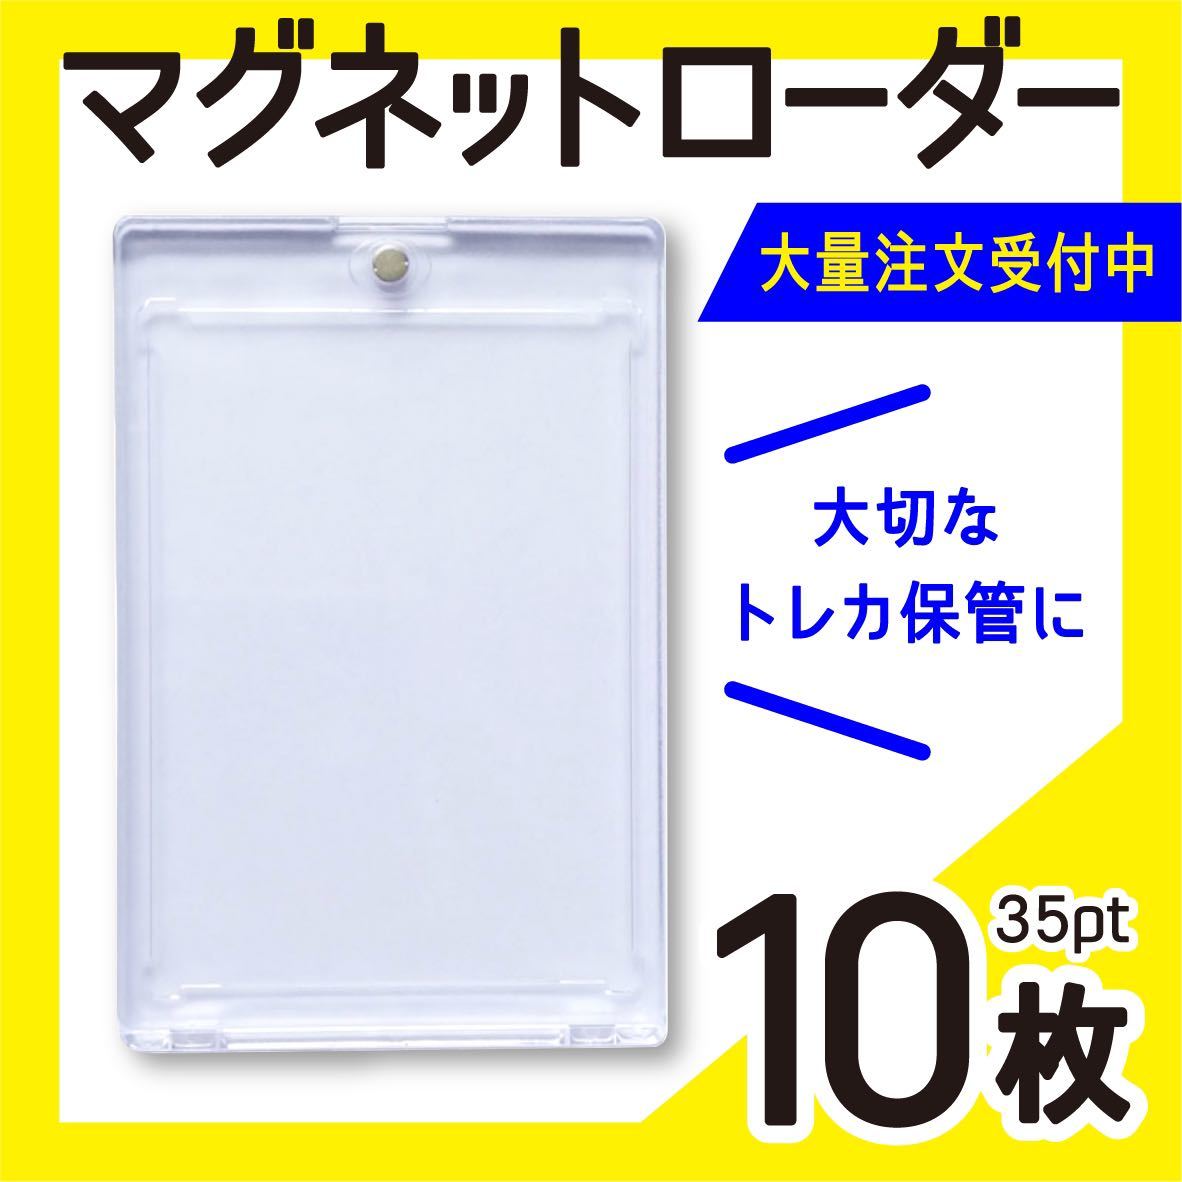 日本未発売】 カード マグネットホルダー 35pt 【本日限定200円引き 